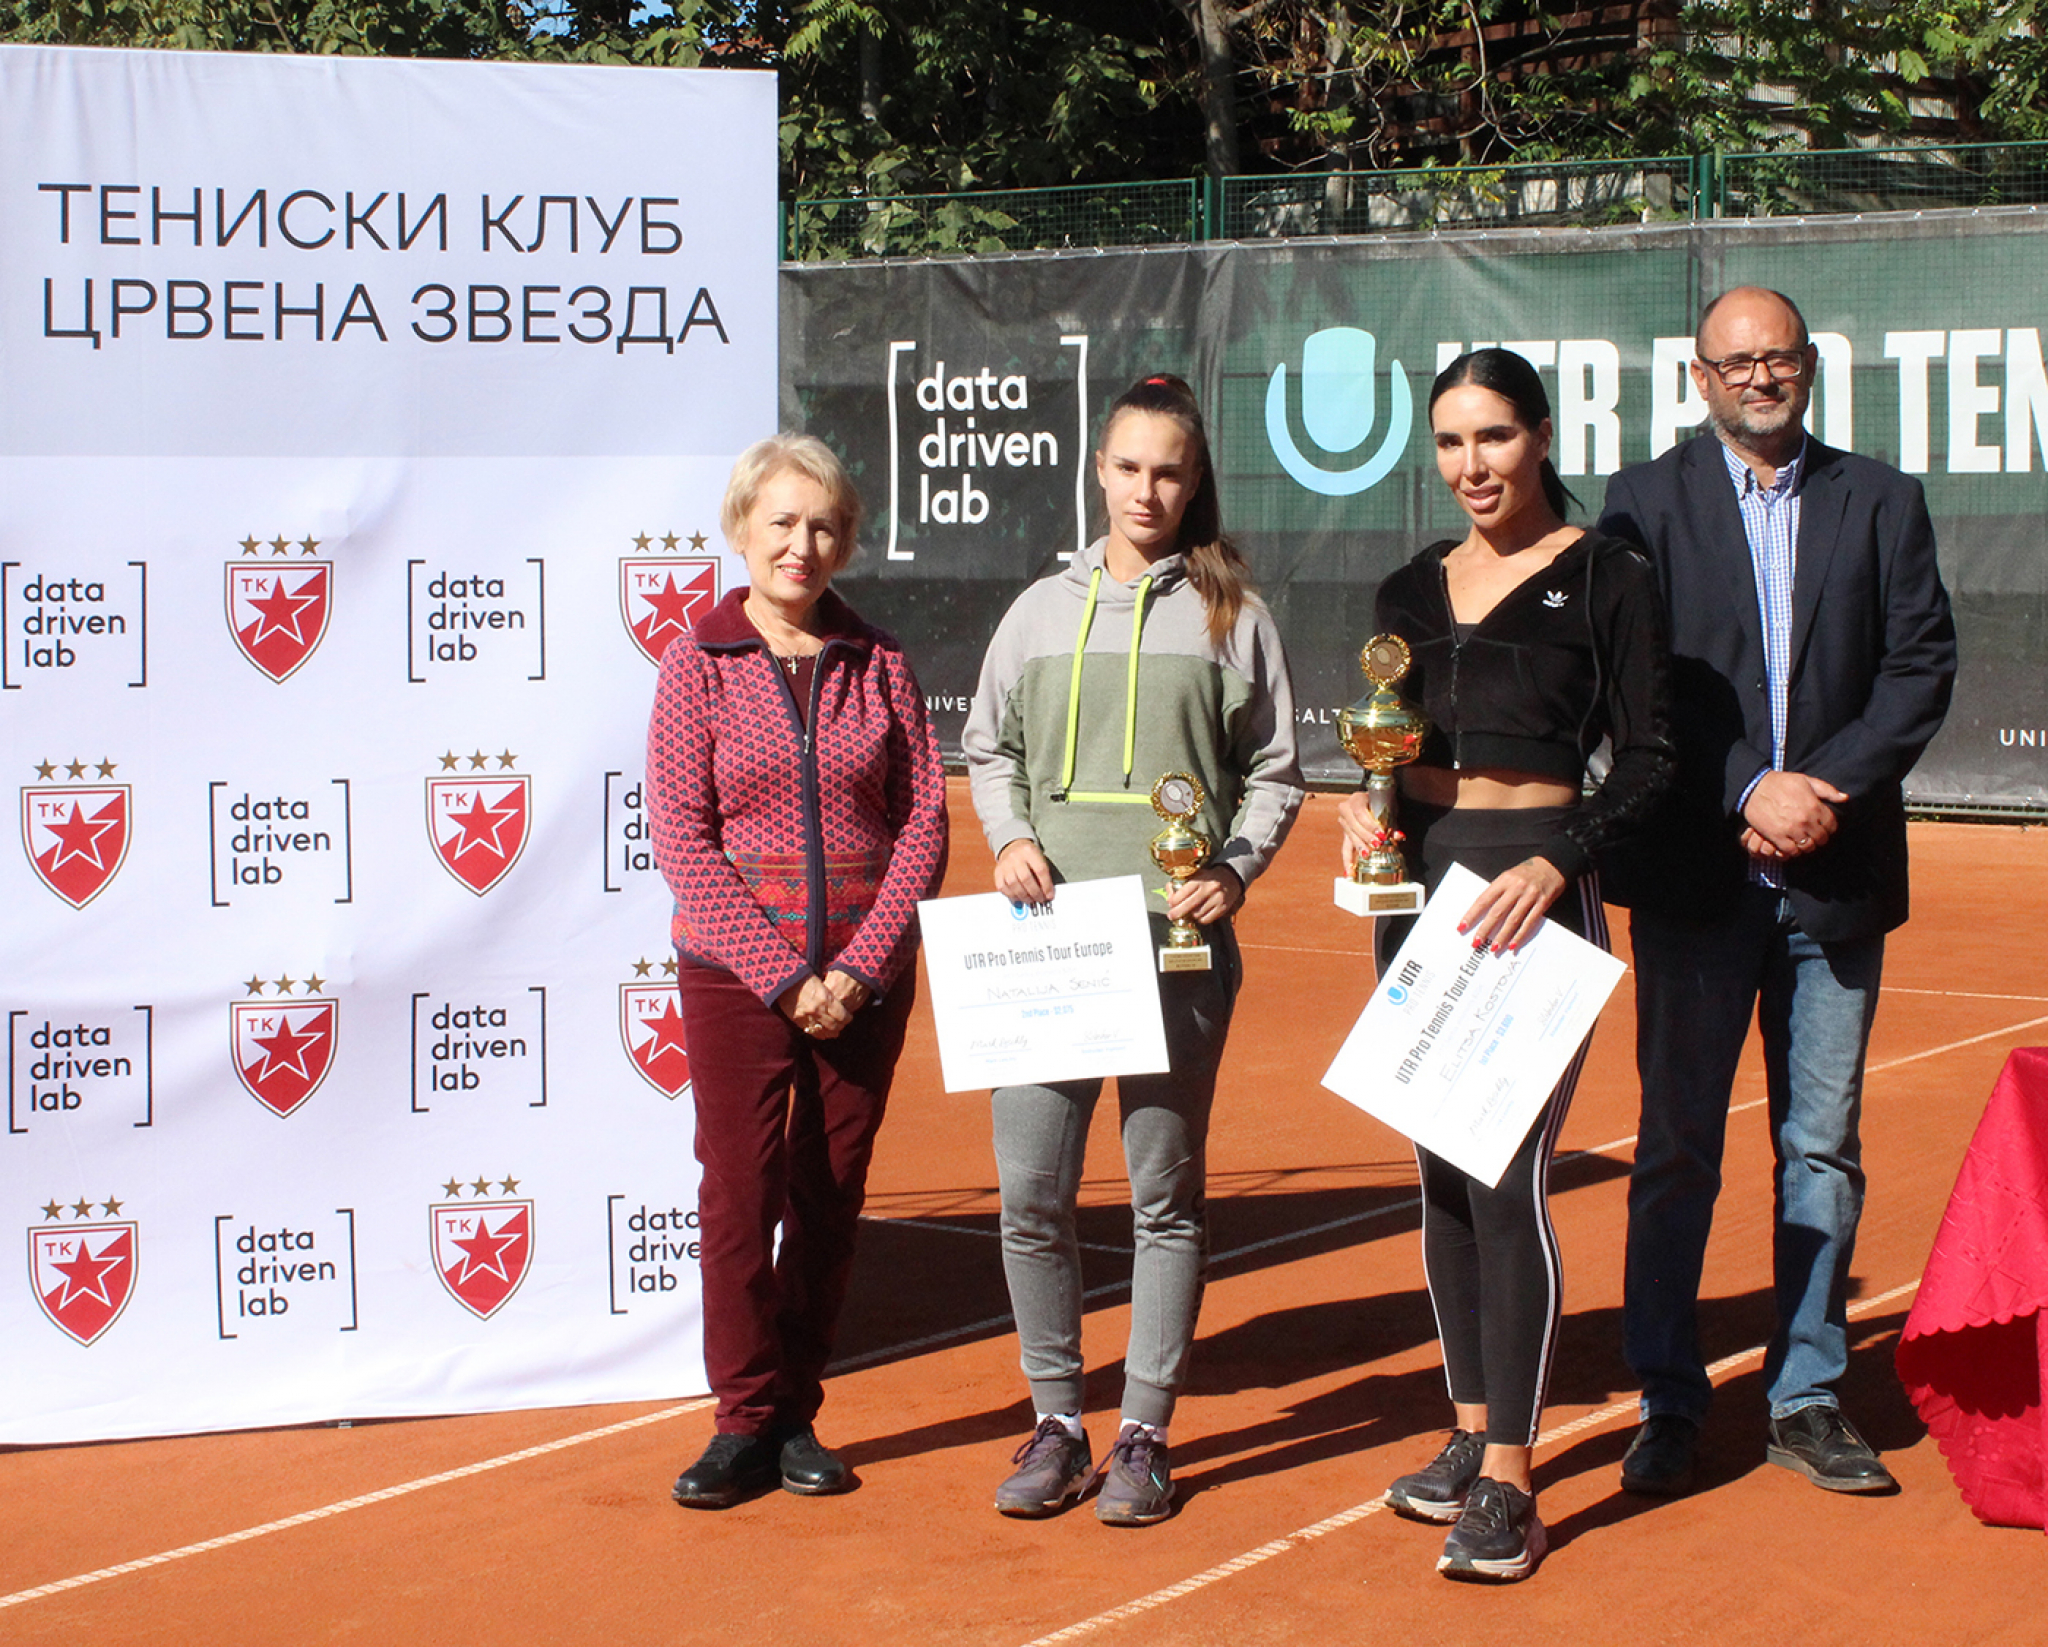 Podeljeno 50.000 dolara na UTR takmičenju na terenima Zvezde u Beogradu